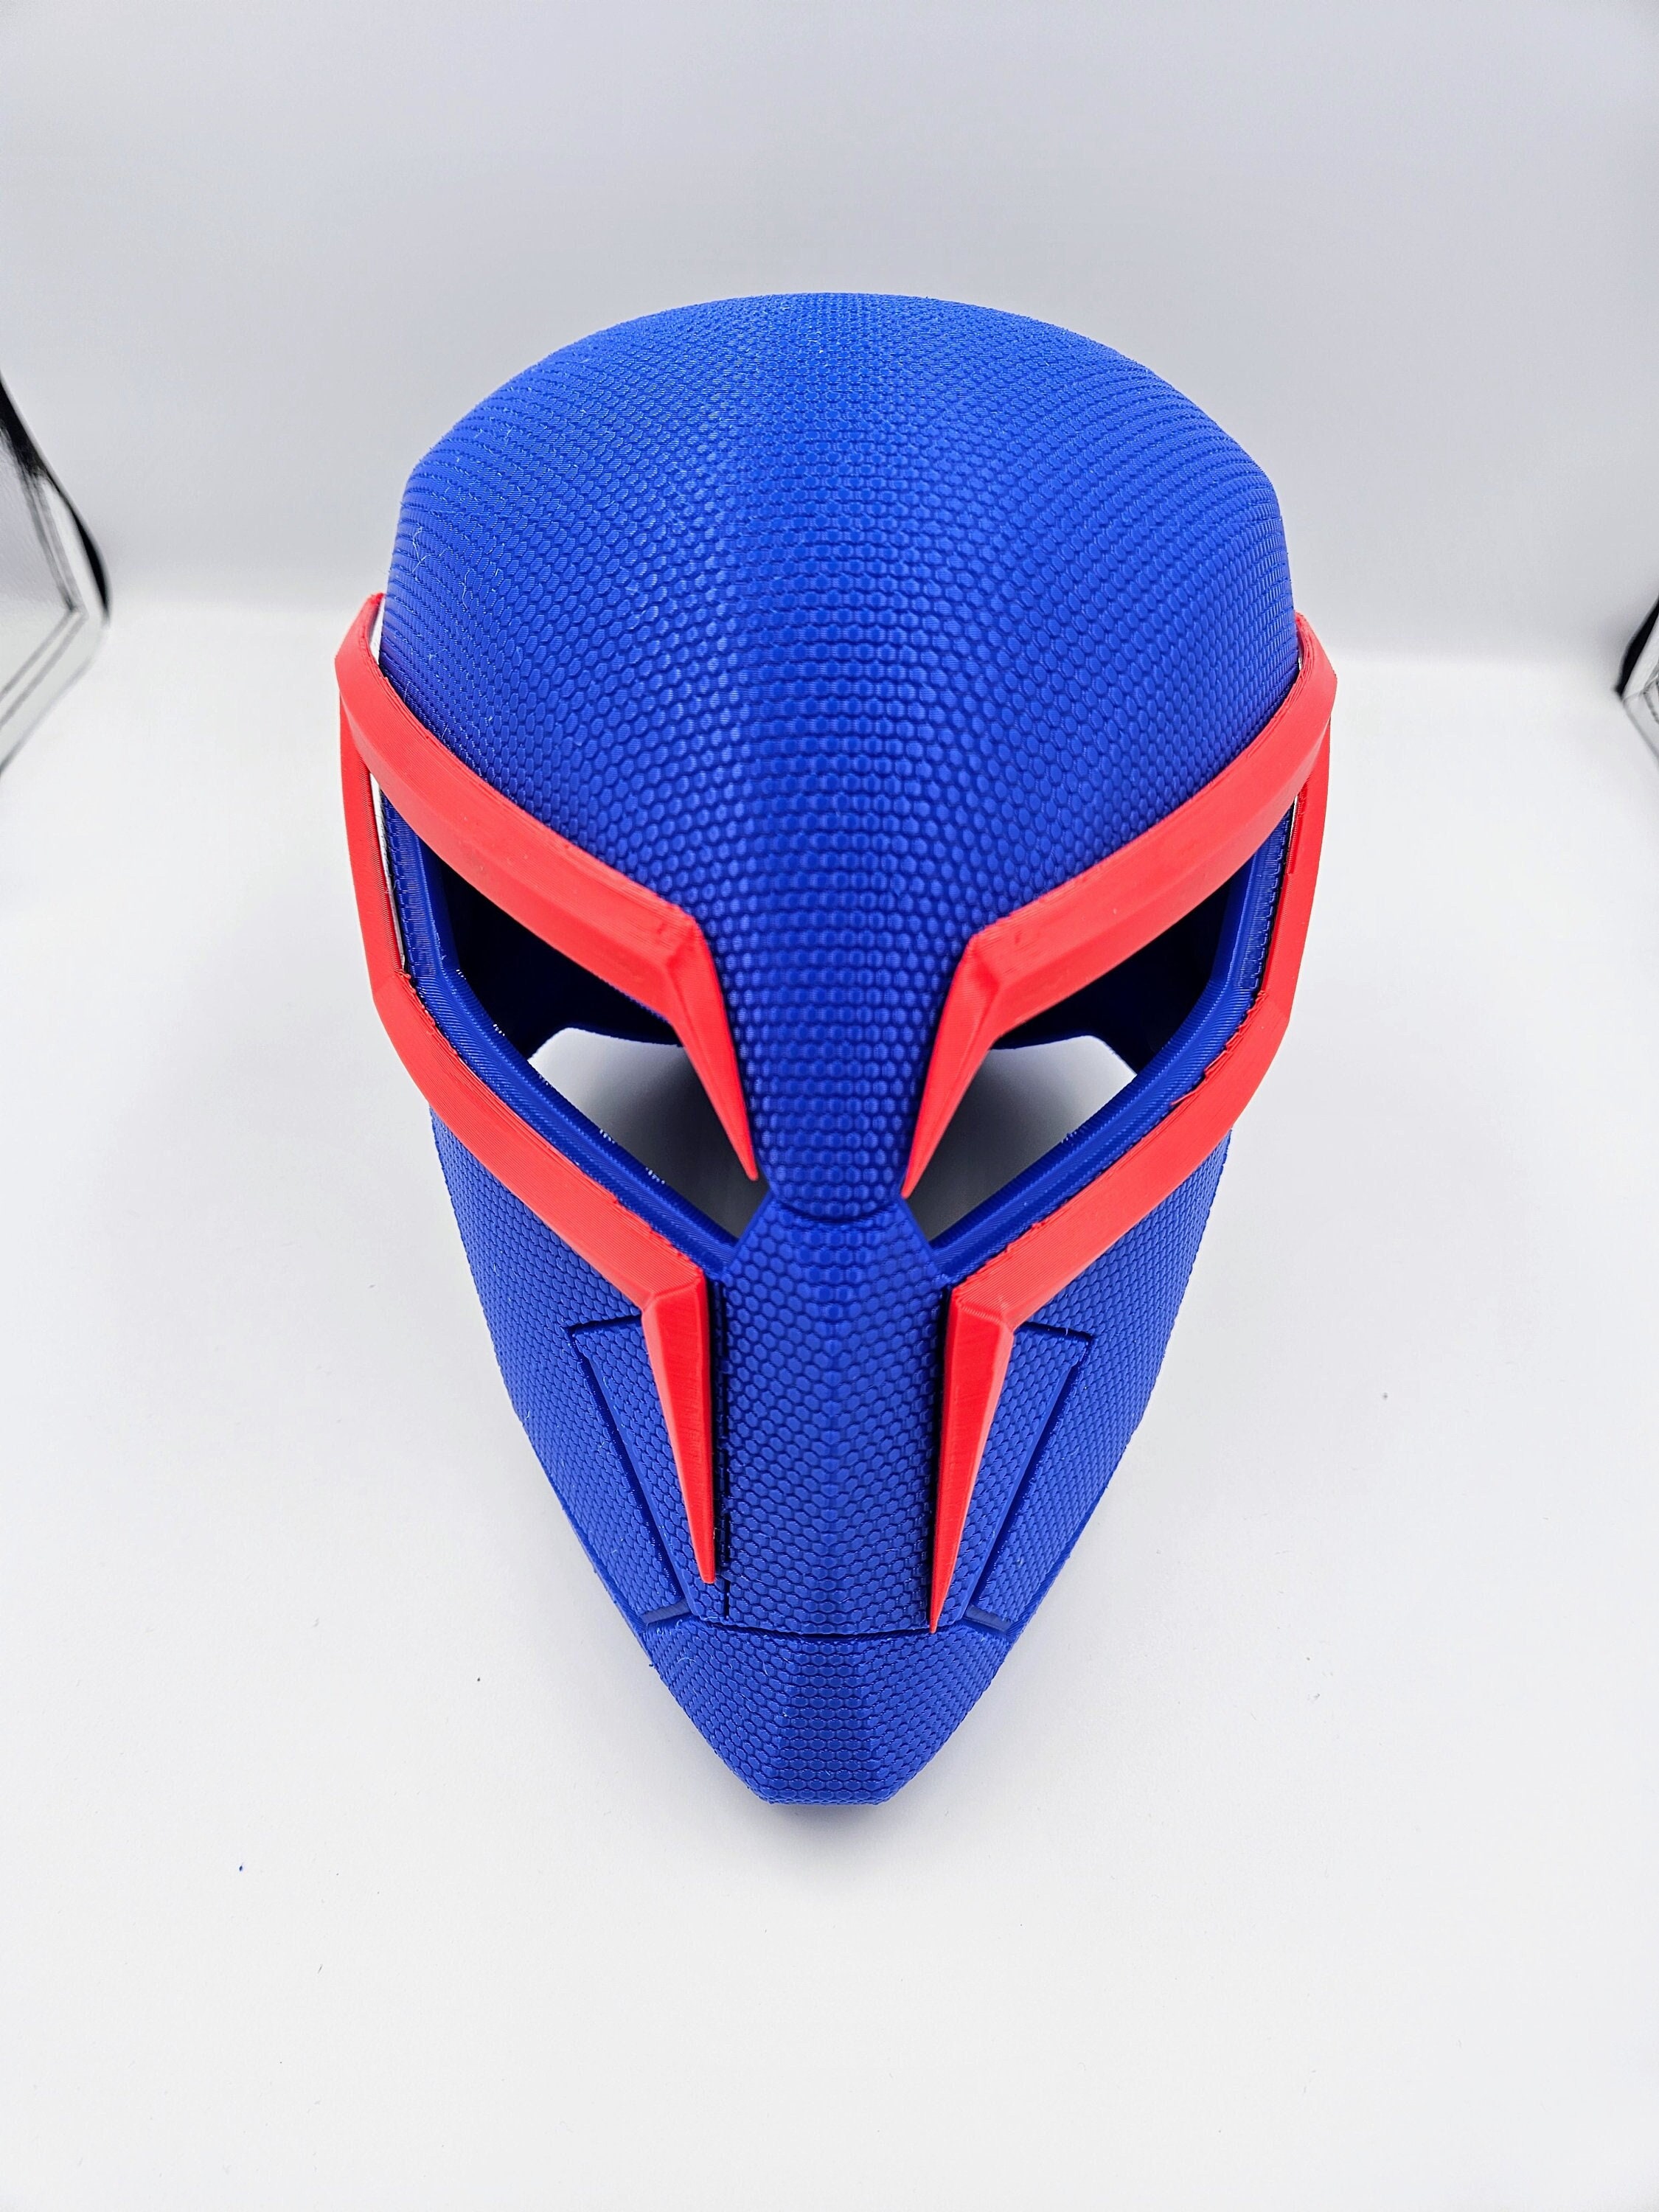 Spiderman 2099 Custom Painted Airbriushed Motorcycle Helmet 